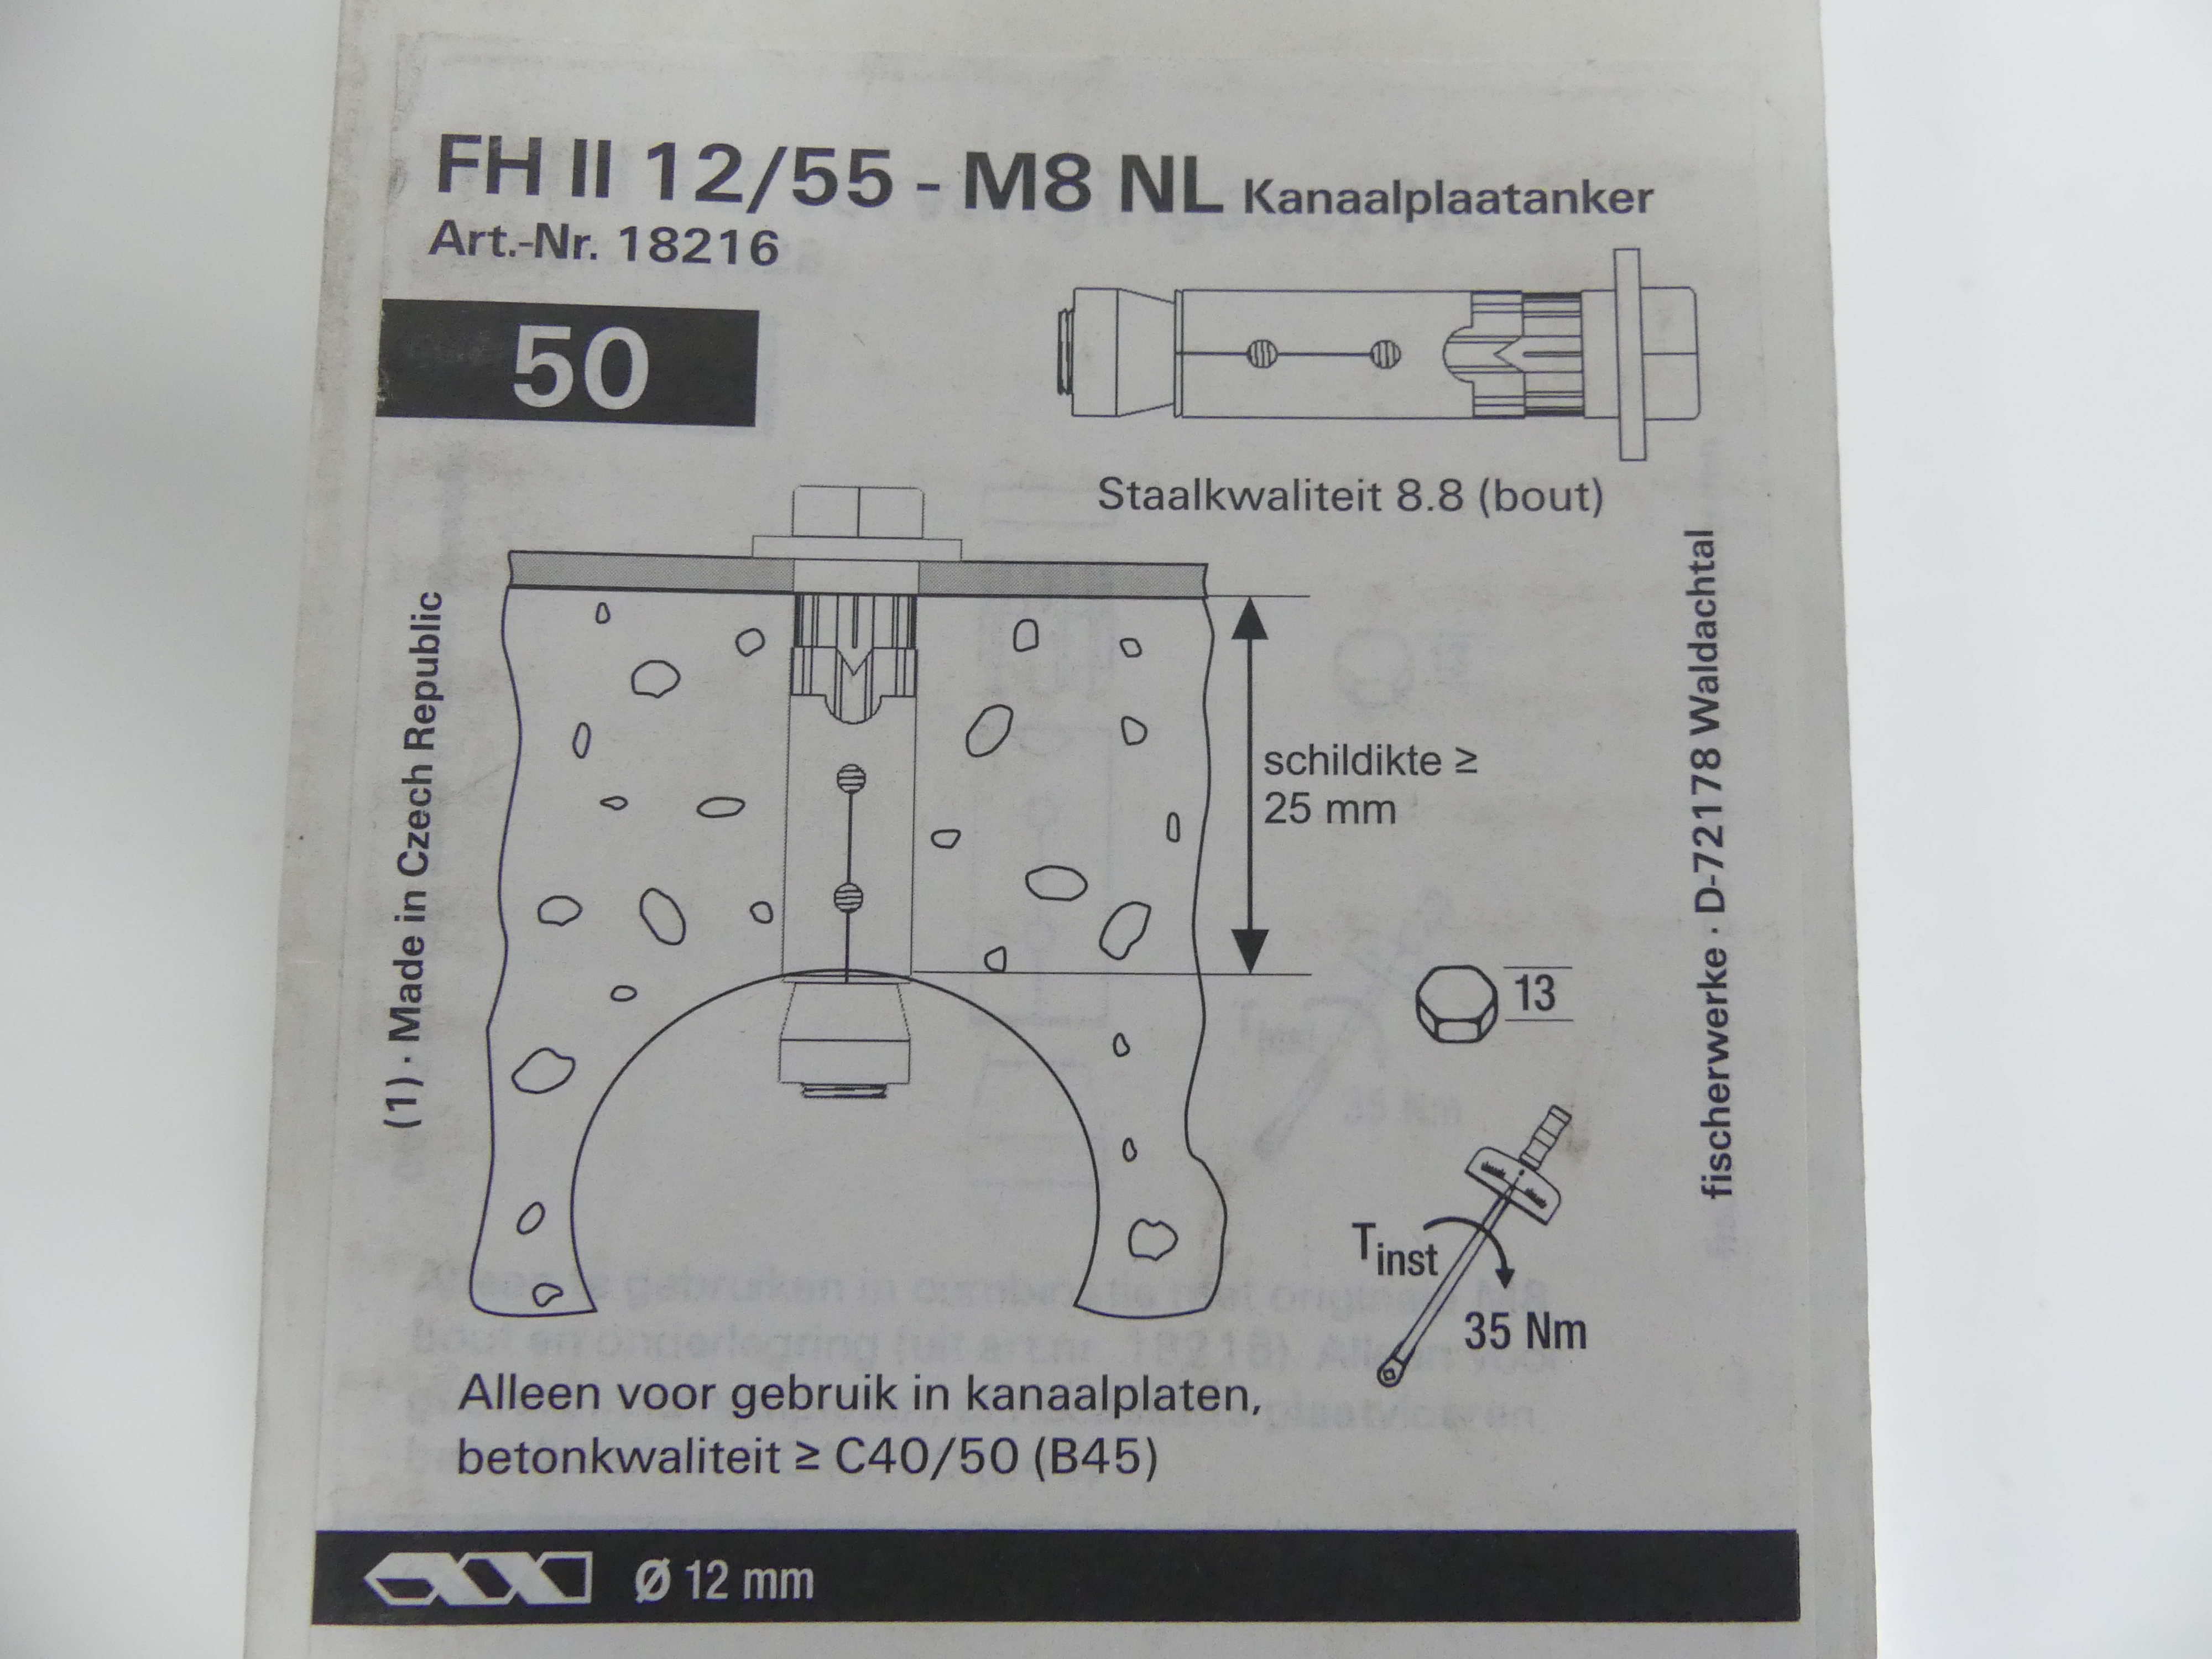 1x50 stuks Fischer kanaalplaatankers FH II 12/55 - M8 NL  